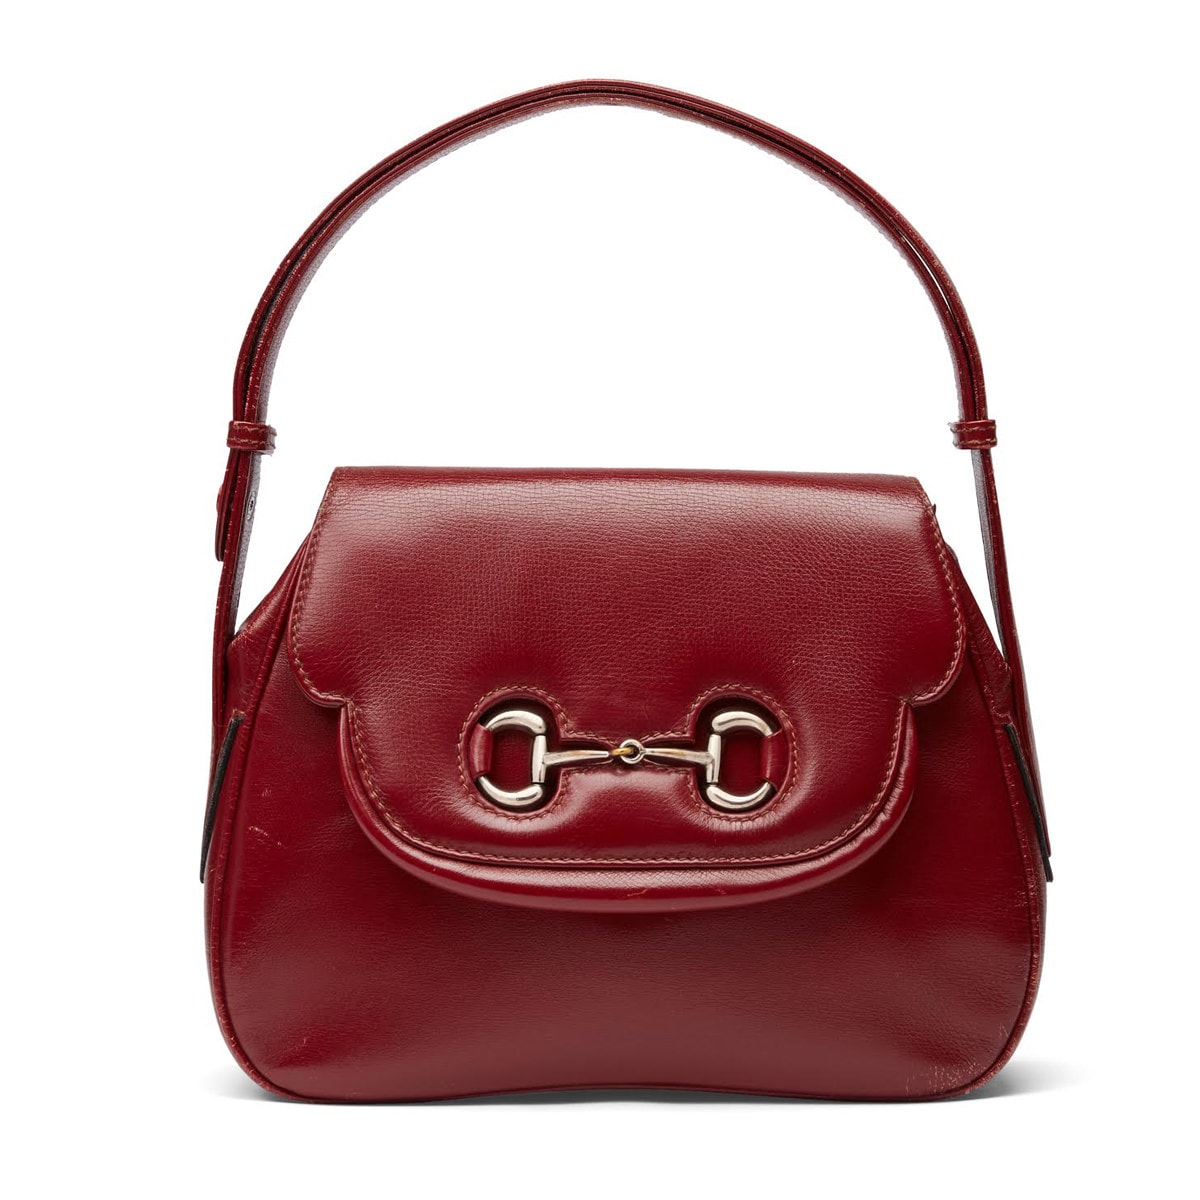 Handbag History: The Gucci Horsebit - PurseBlog